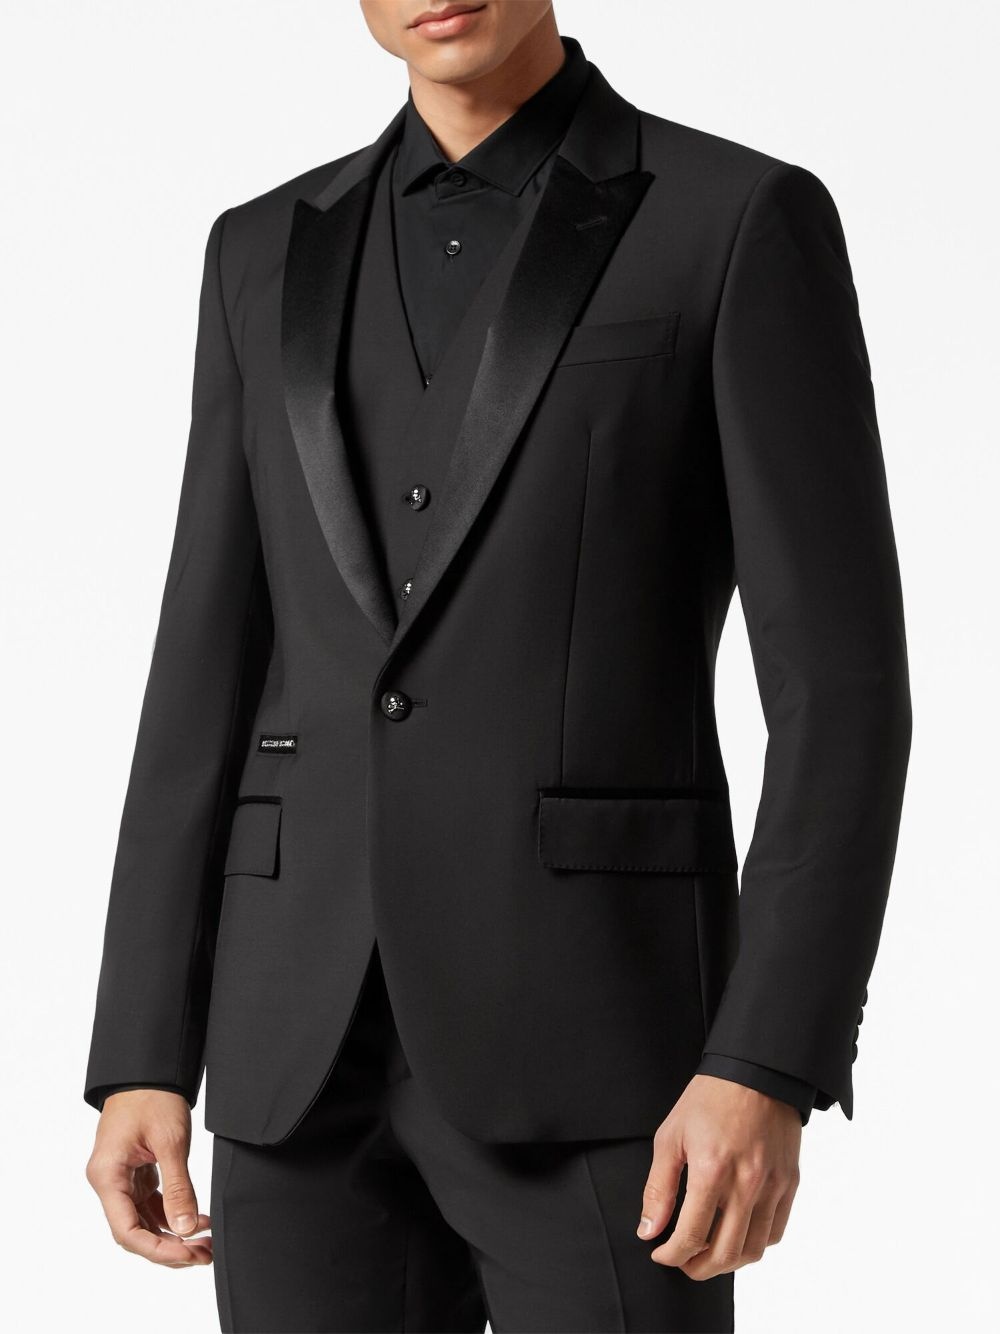 notched-lapels suit set - 4